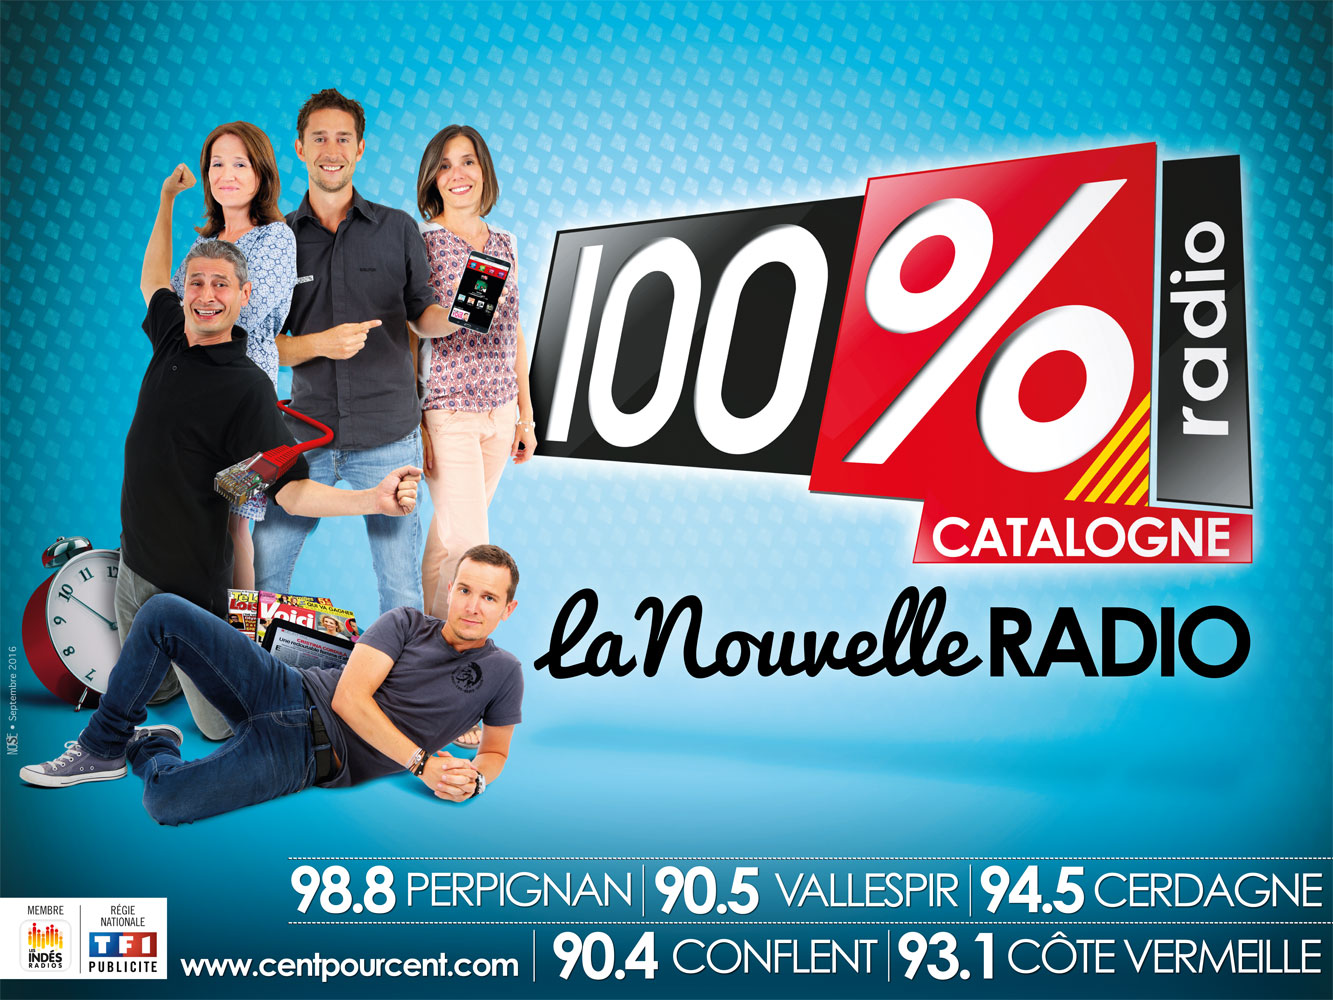 La radio 100% est arrivée dans le Pyrénées-Orientales